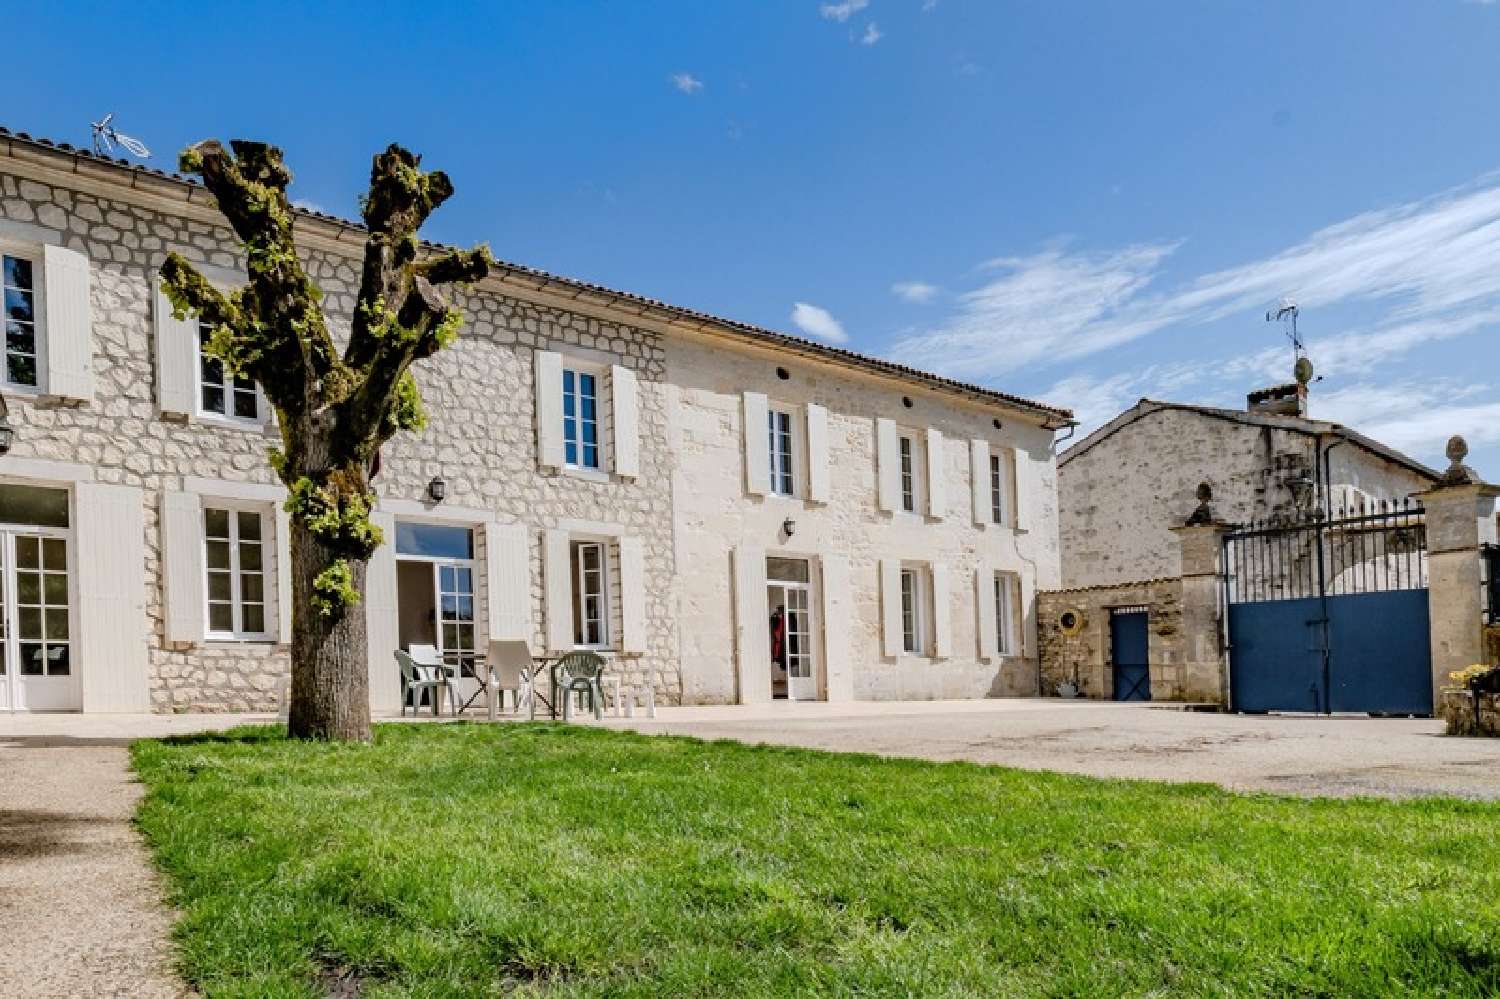  à vendre maison Cognac Charente 2